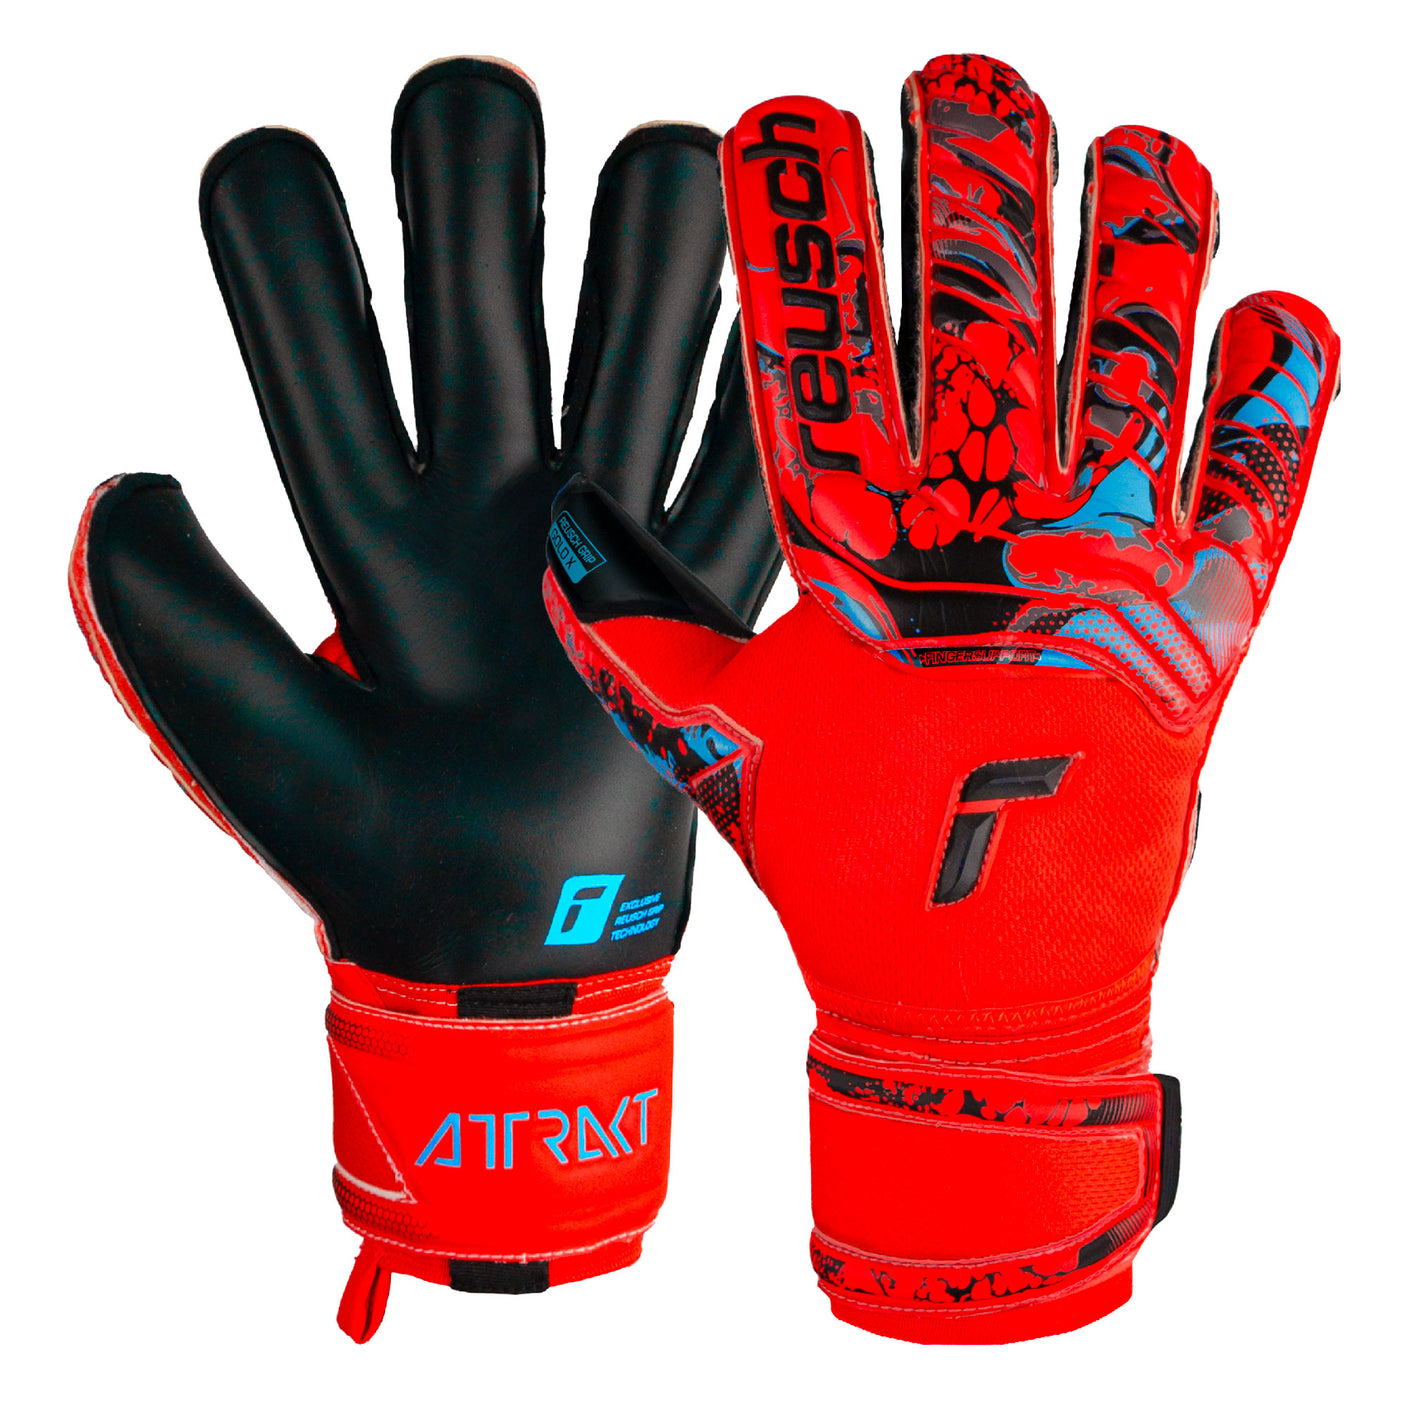 Reusch Men's Attrakt Gold X Evolution Cut Fingersave Goalkeeper Gloves Red Both